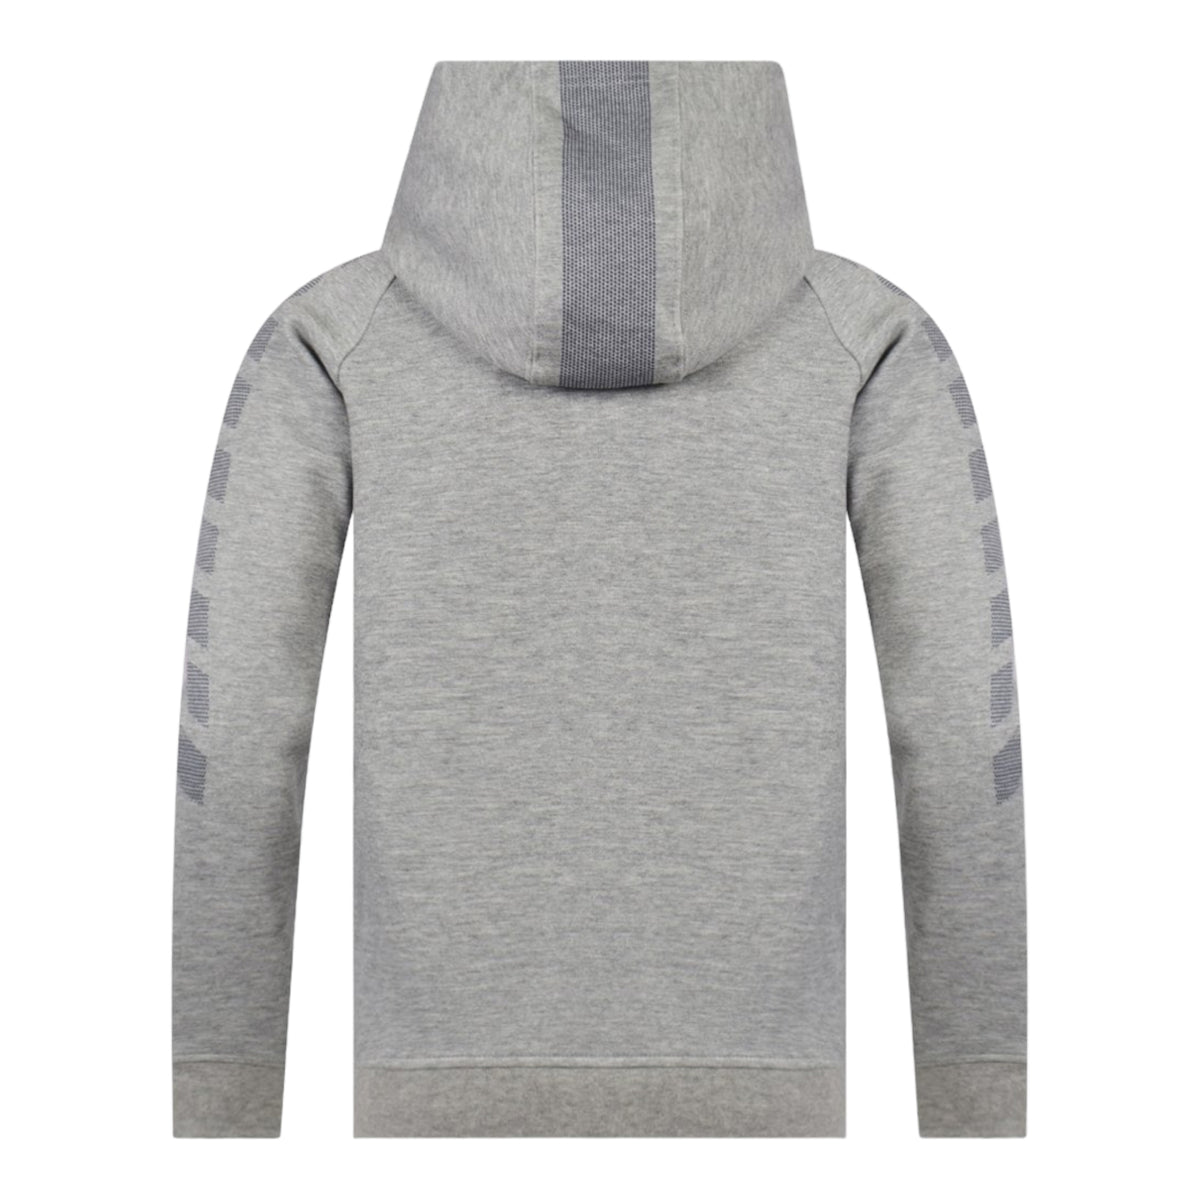 Hugo Boss Kids Full-Zip Up Dot Graphic Hoodie Sweatshirt